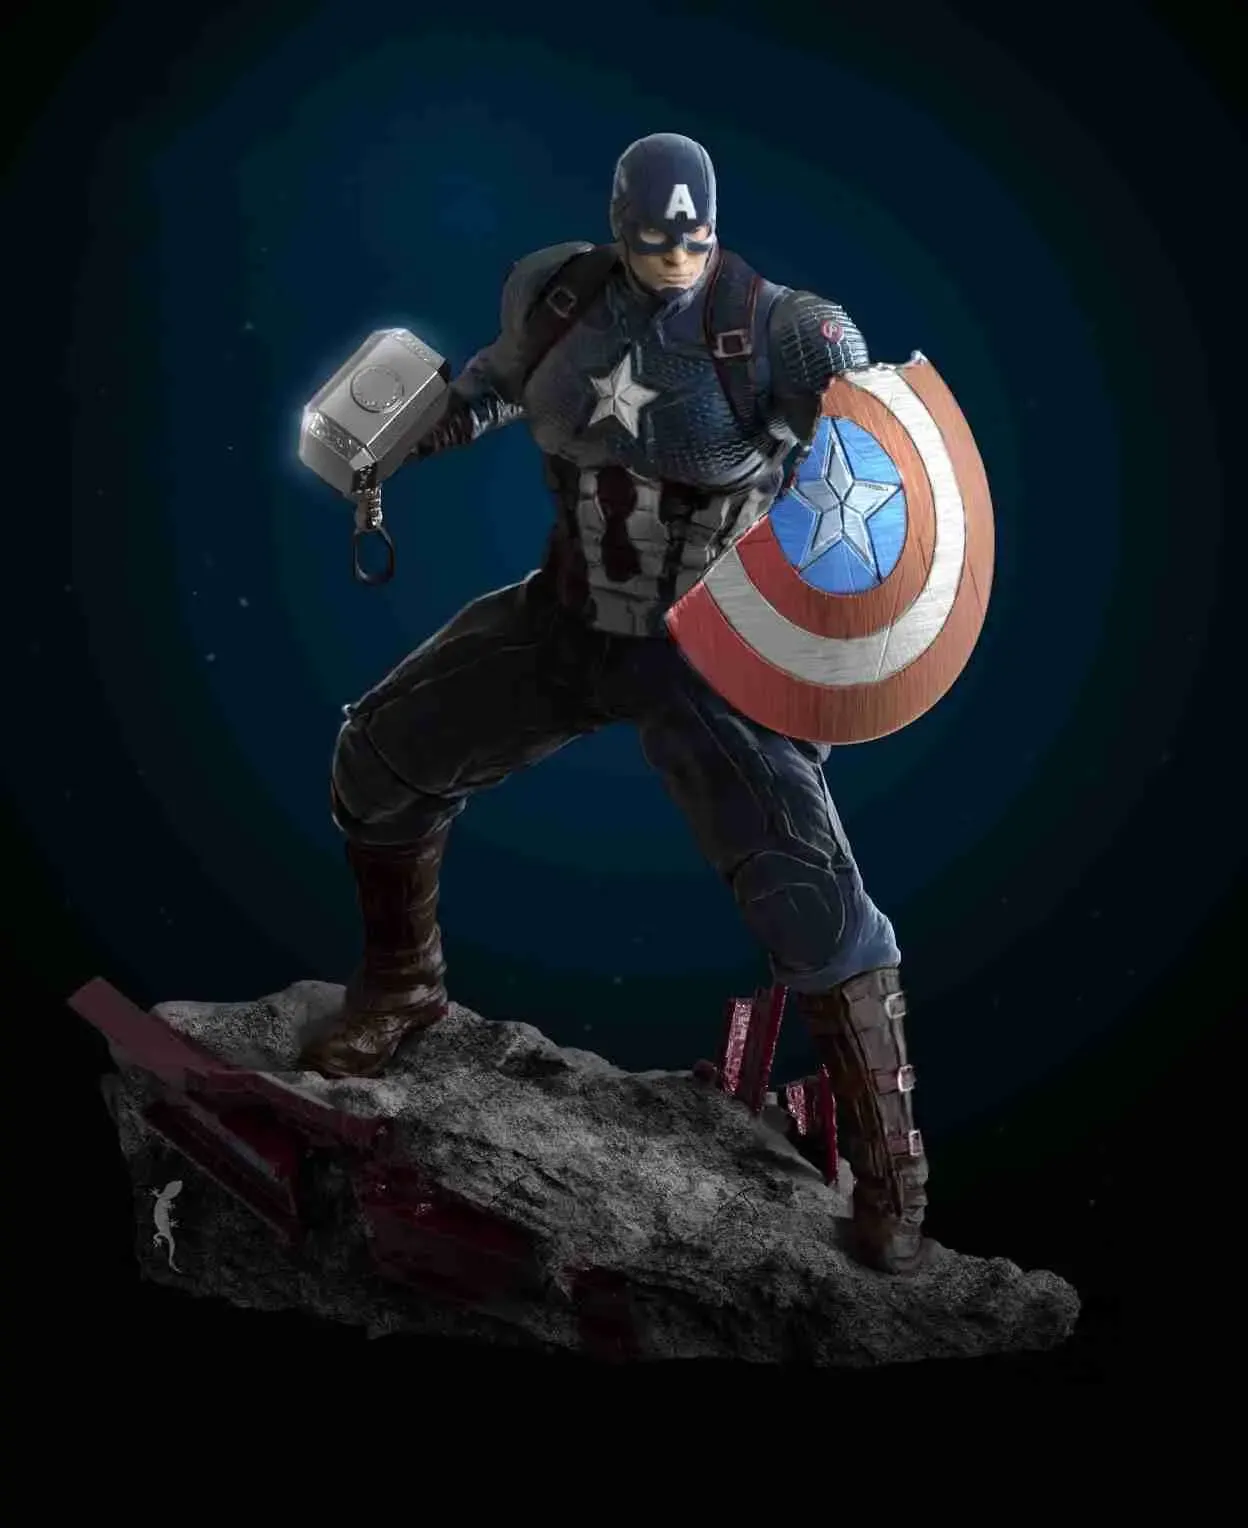 Captain America statue